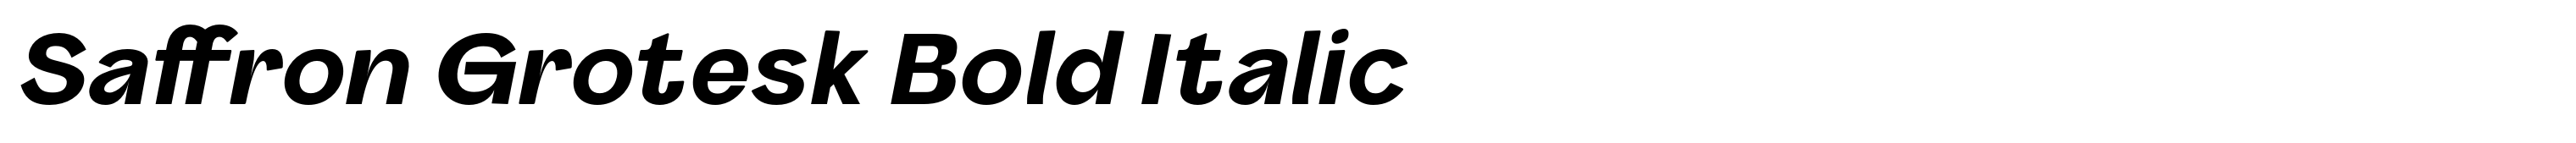 Saffron Grotesk Bold Italic